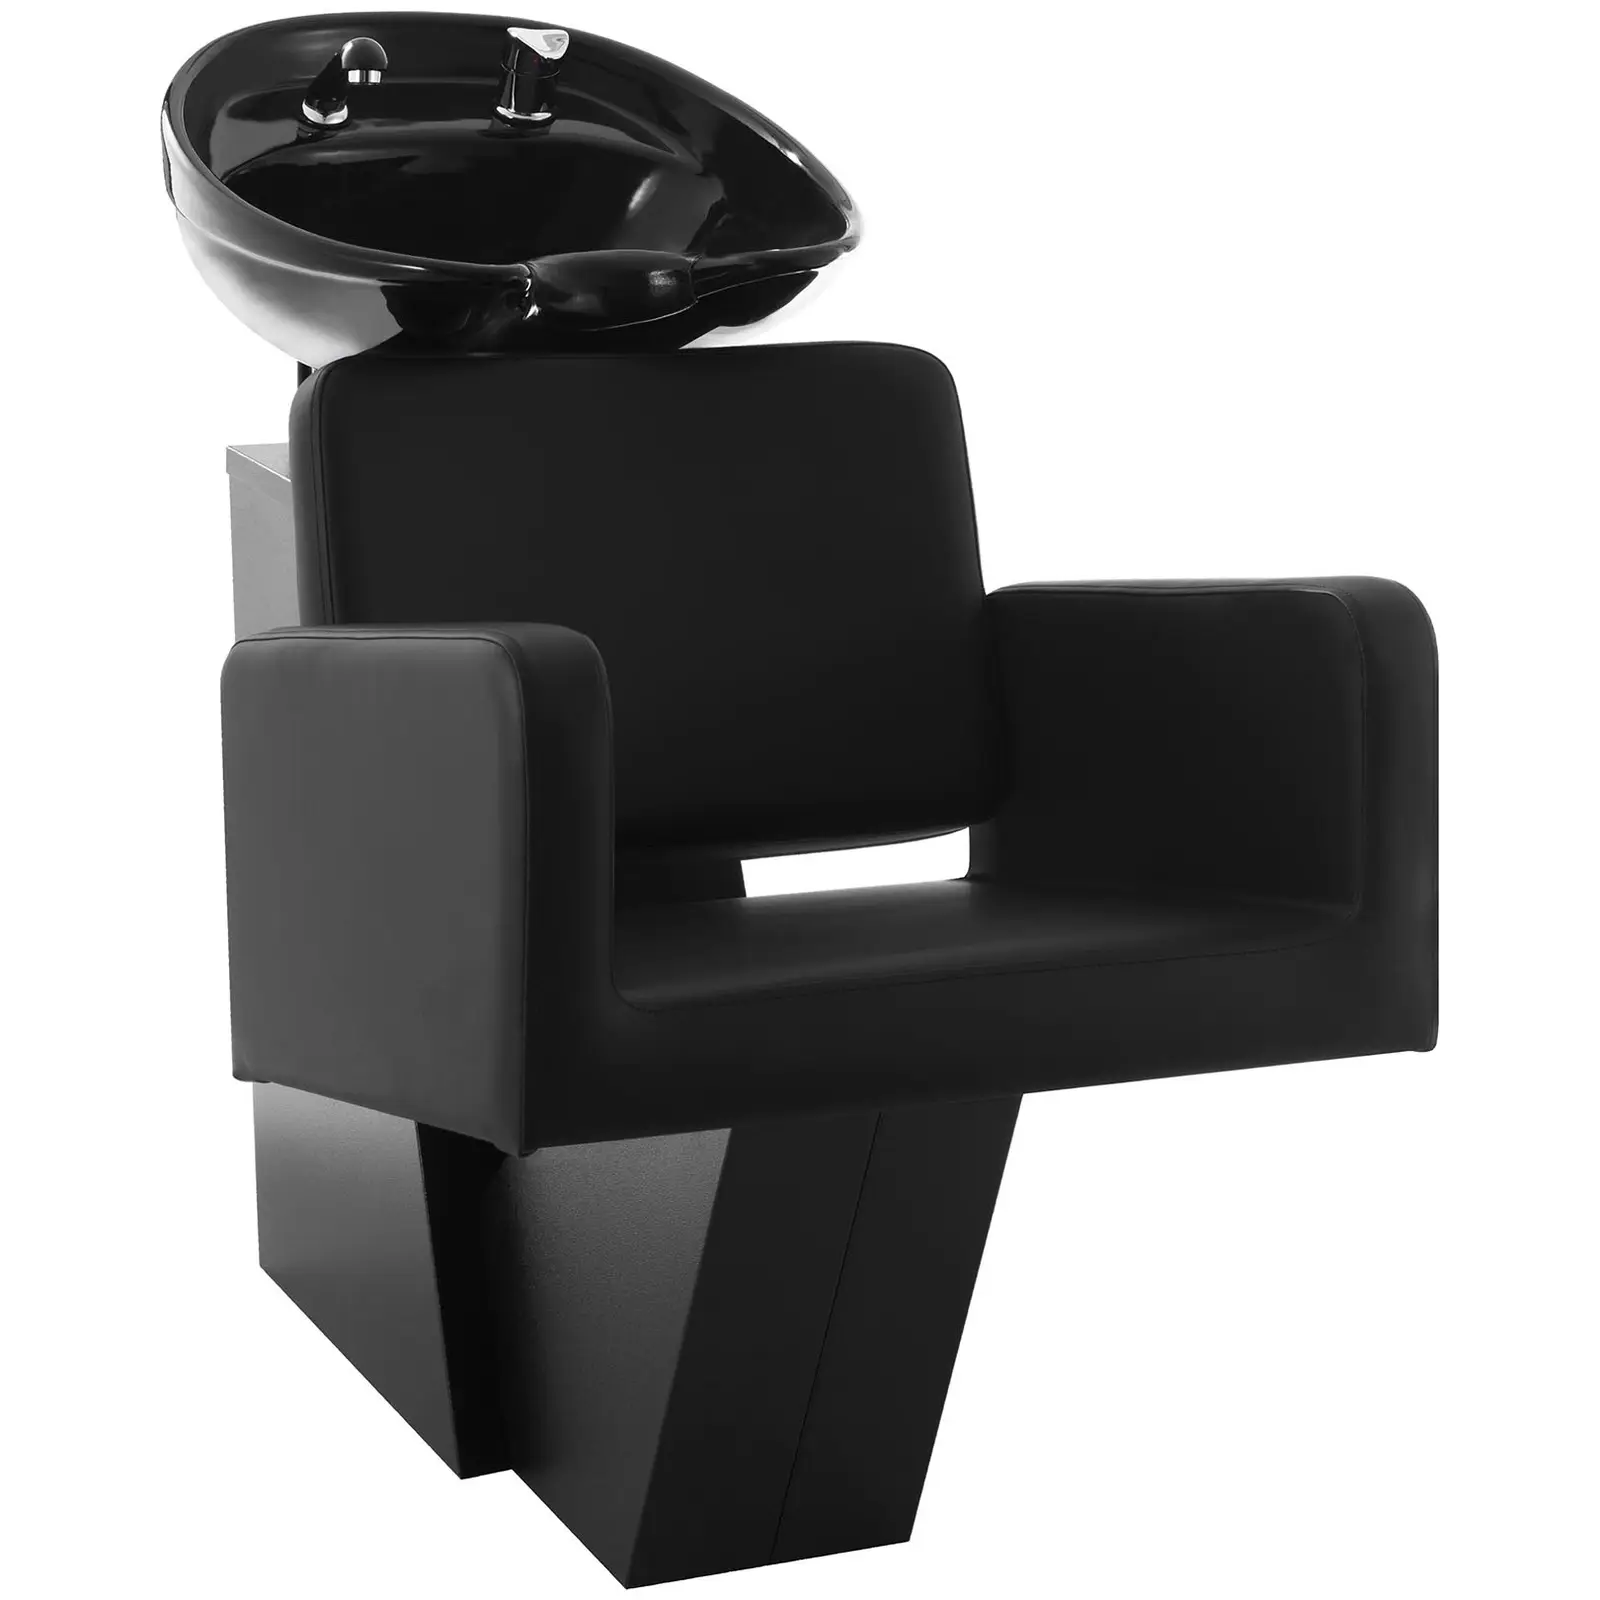 Fodrász fejmosó fotellel - 600x505 mm -  Fekete